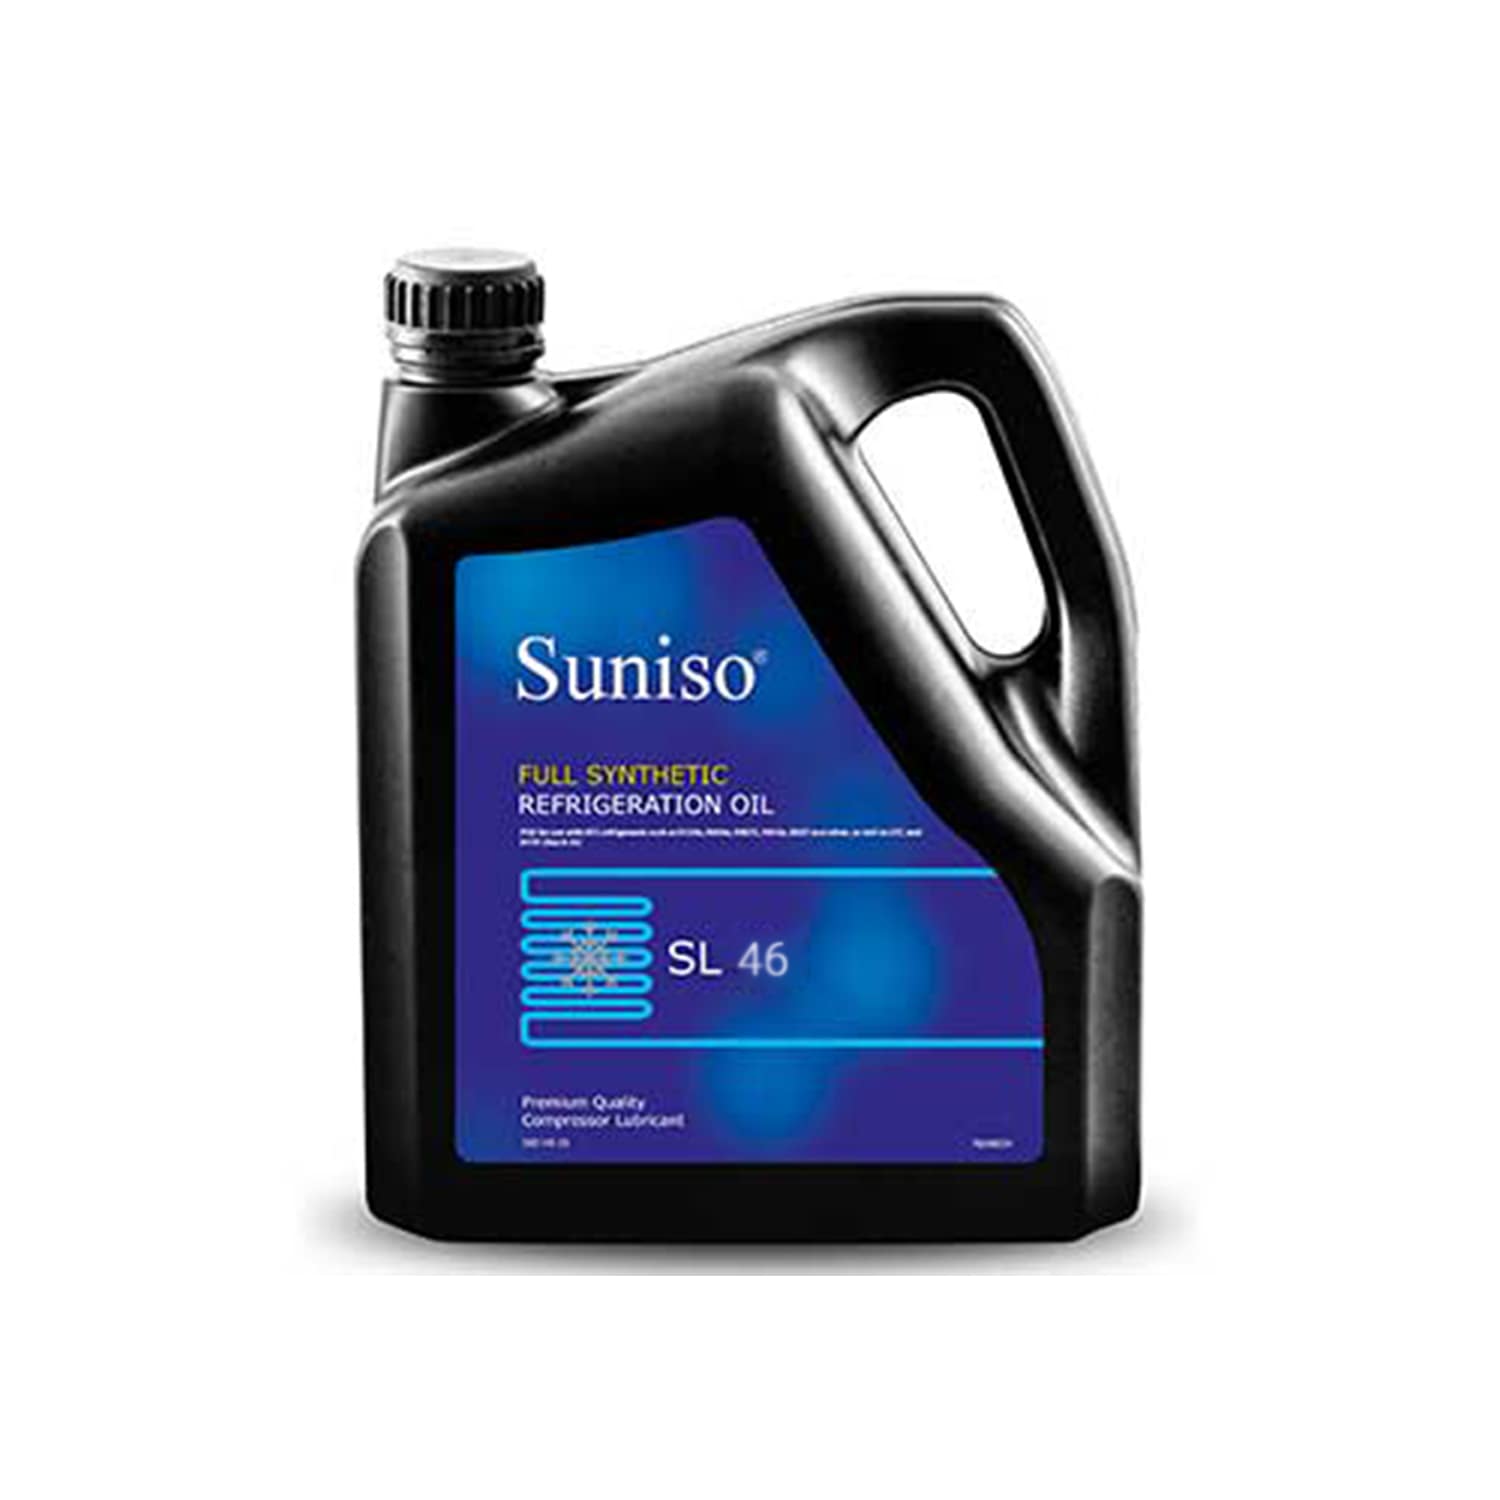 Compressor-oil-suniso-sl46